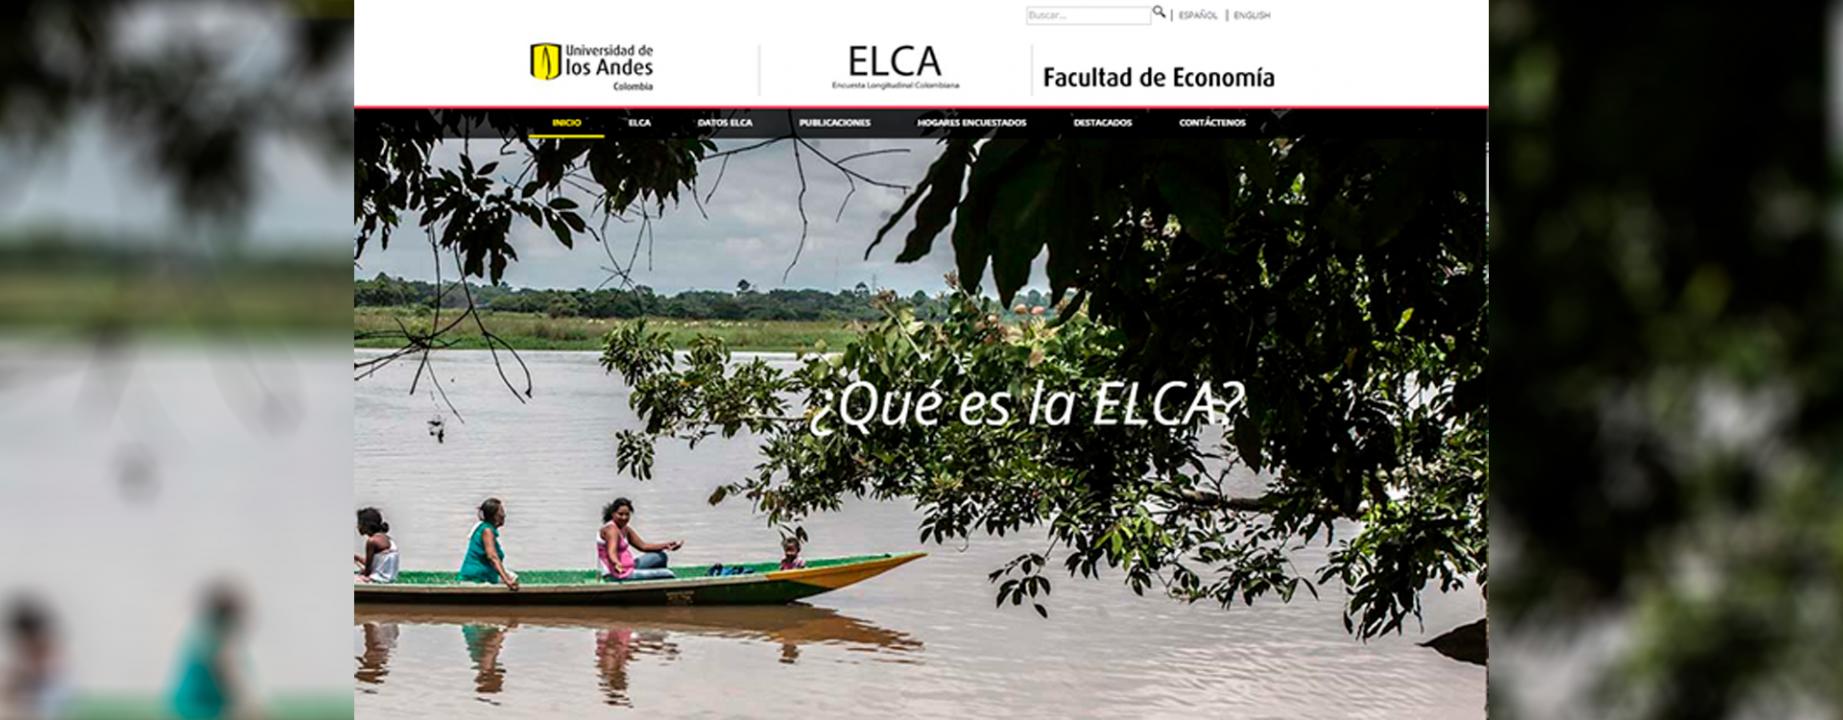 nueva-pagina-elca-banner